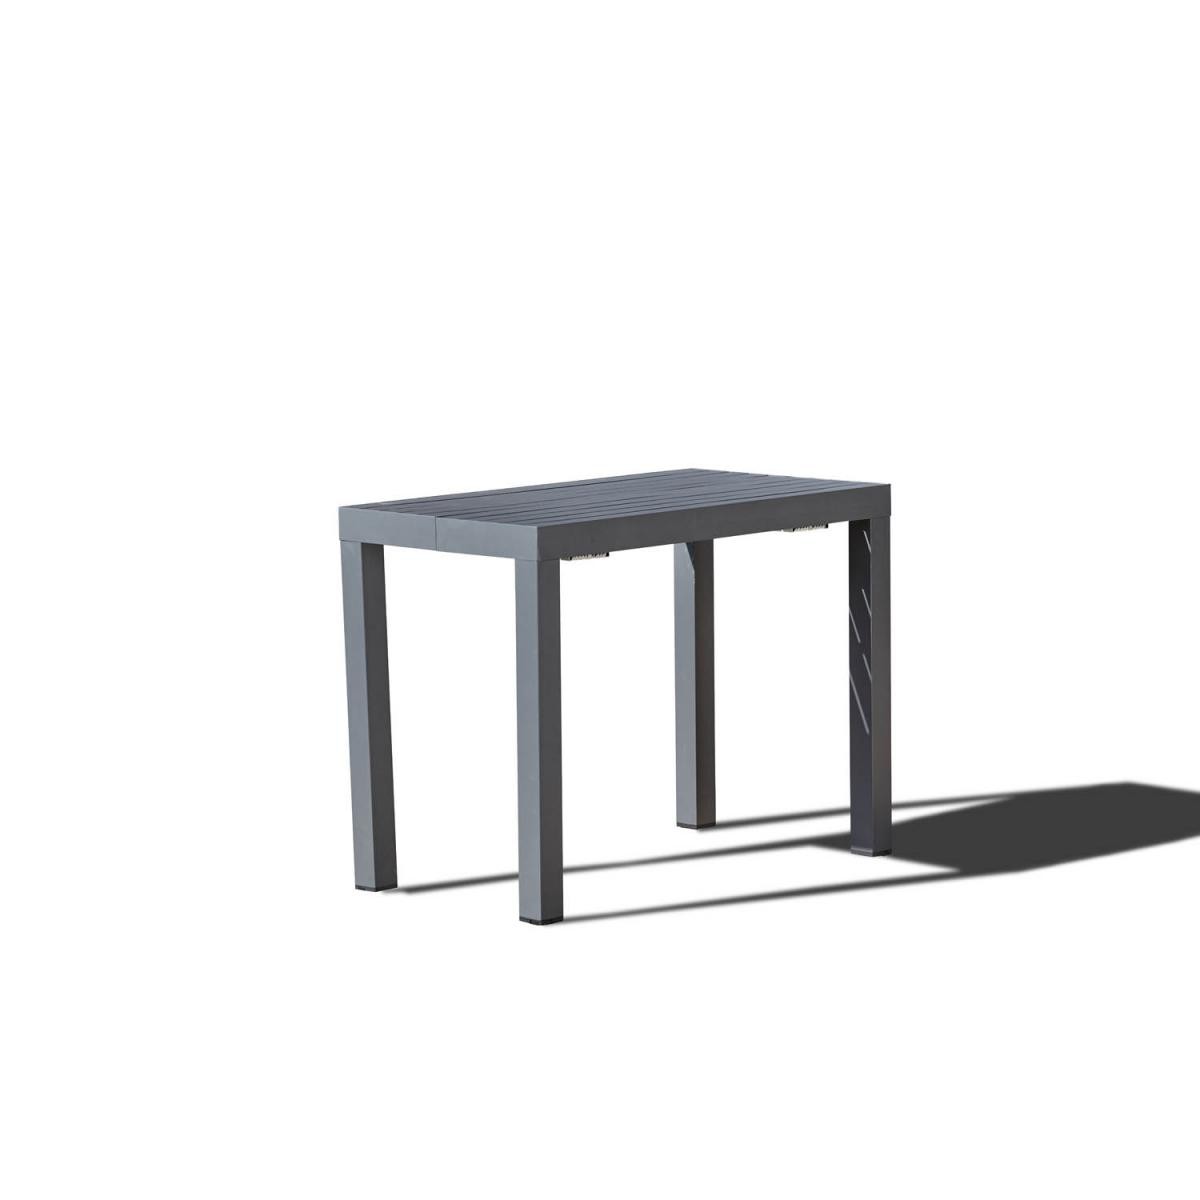 Concept Usine - Olhao - Console extensible aluminium - 2/12 pl - Ensembles tables et chaises